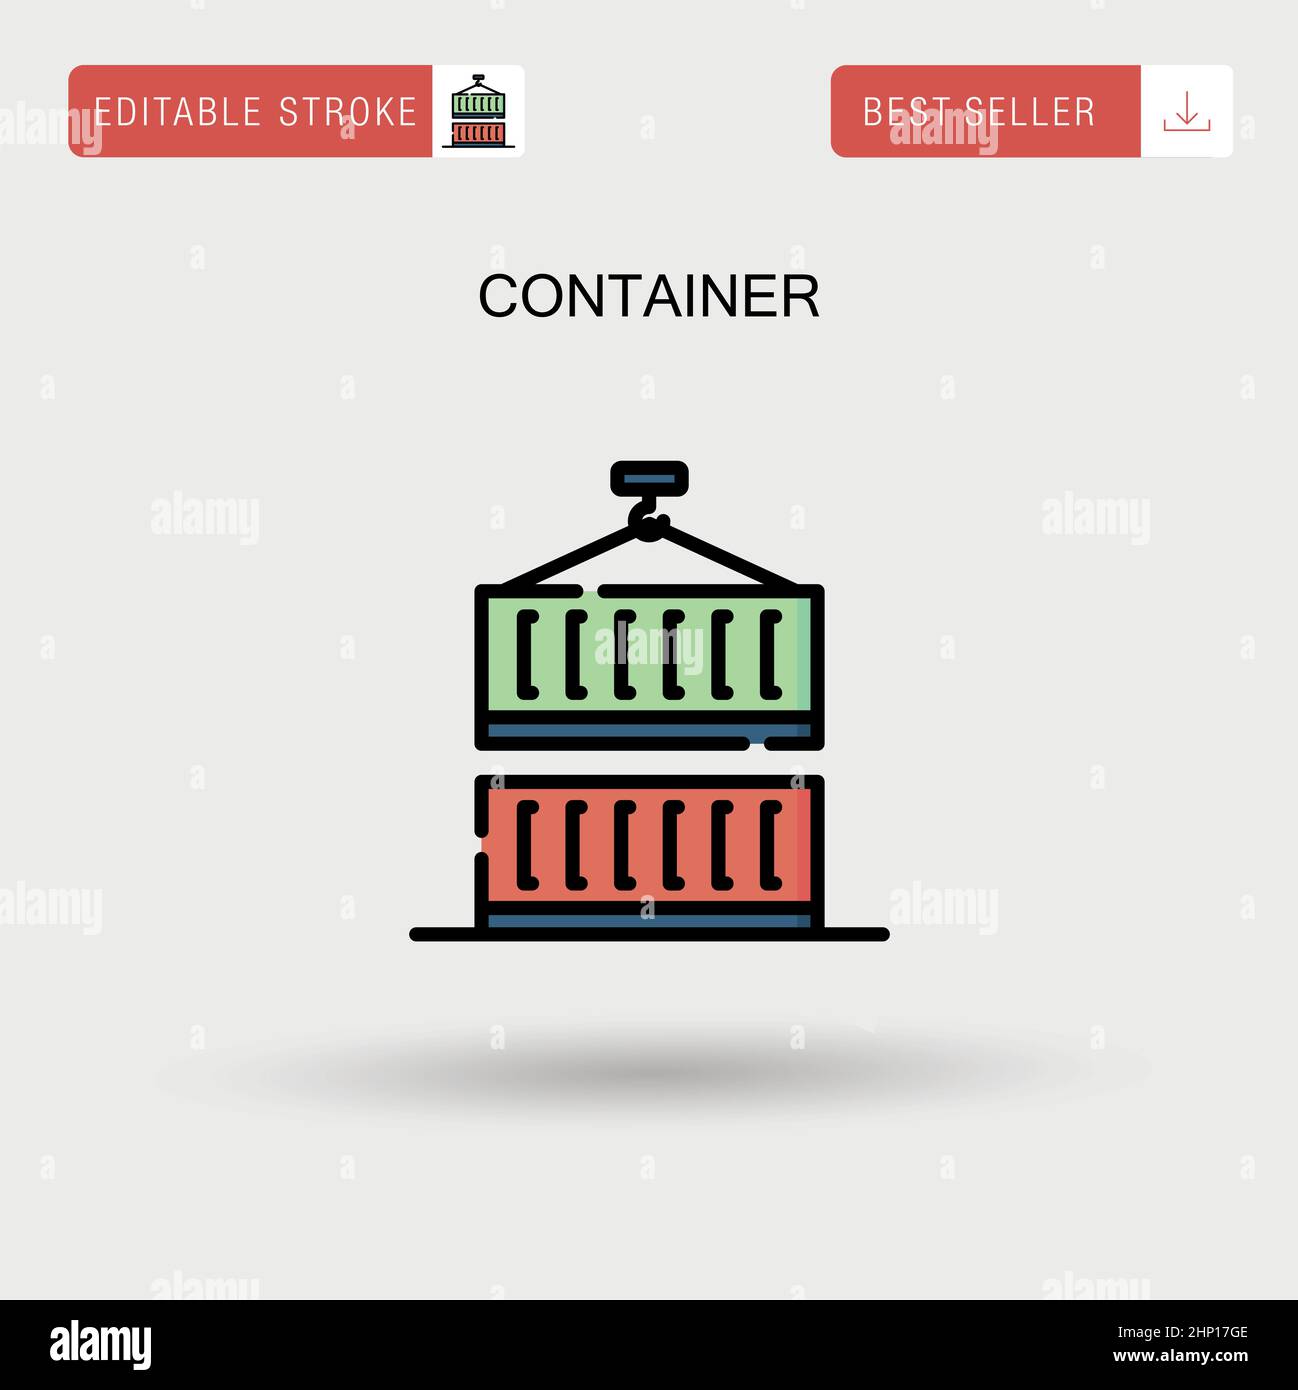 Einfaches Vektorsymbol für Container. Stock Vektor